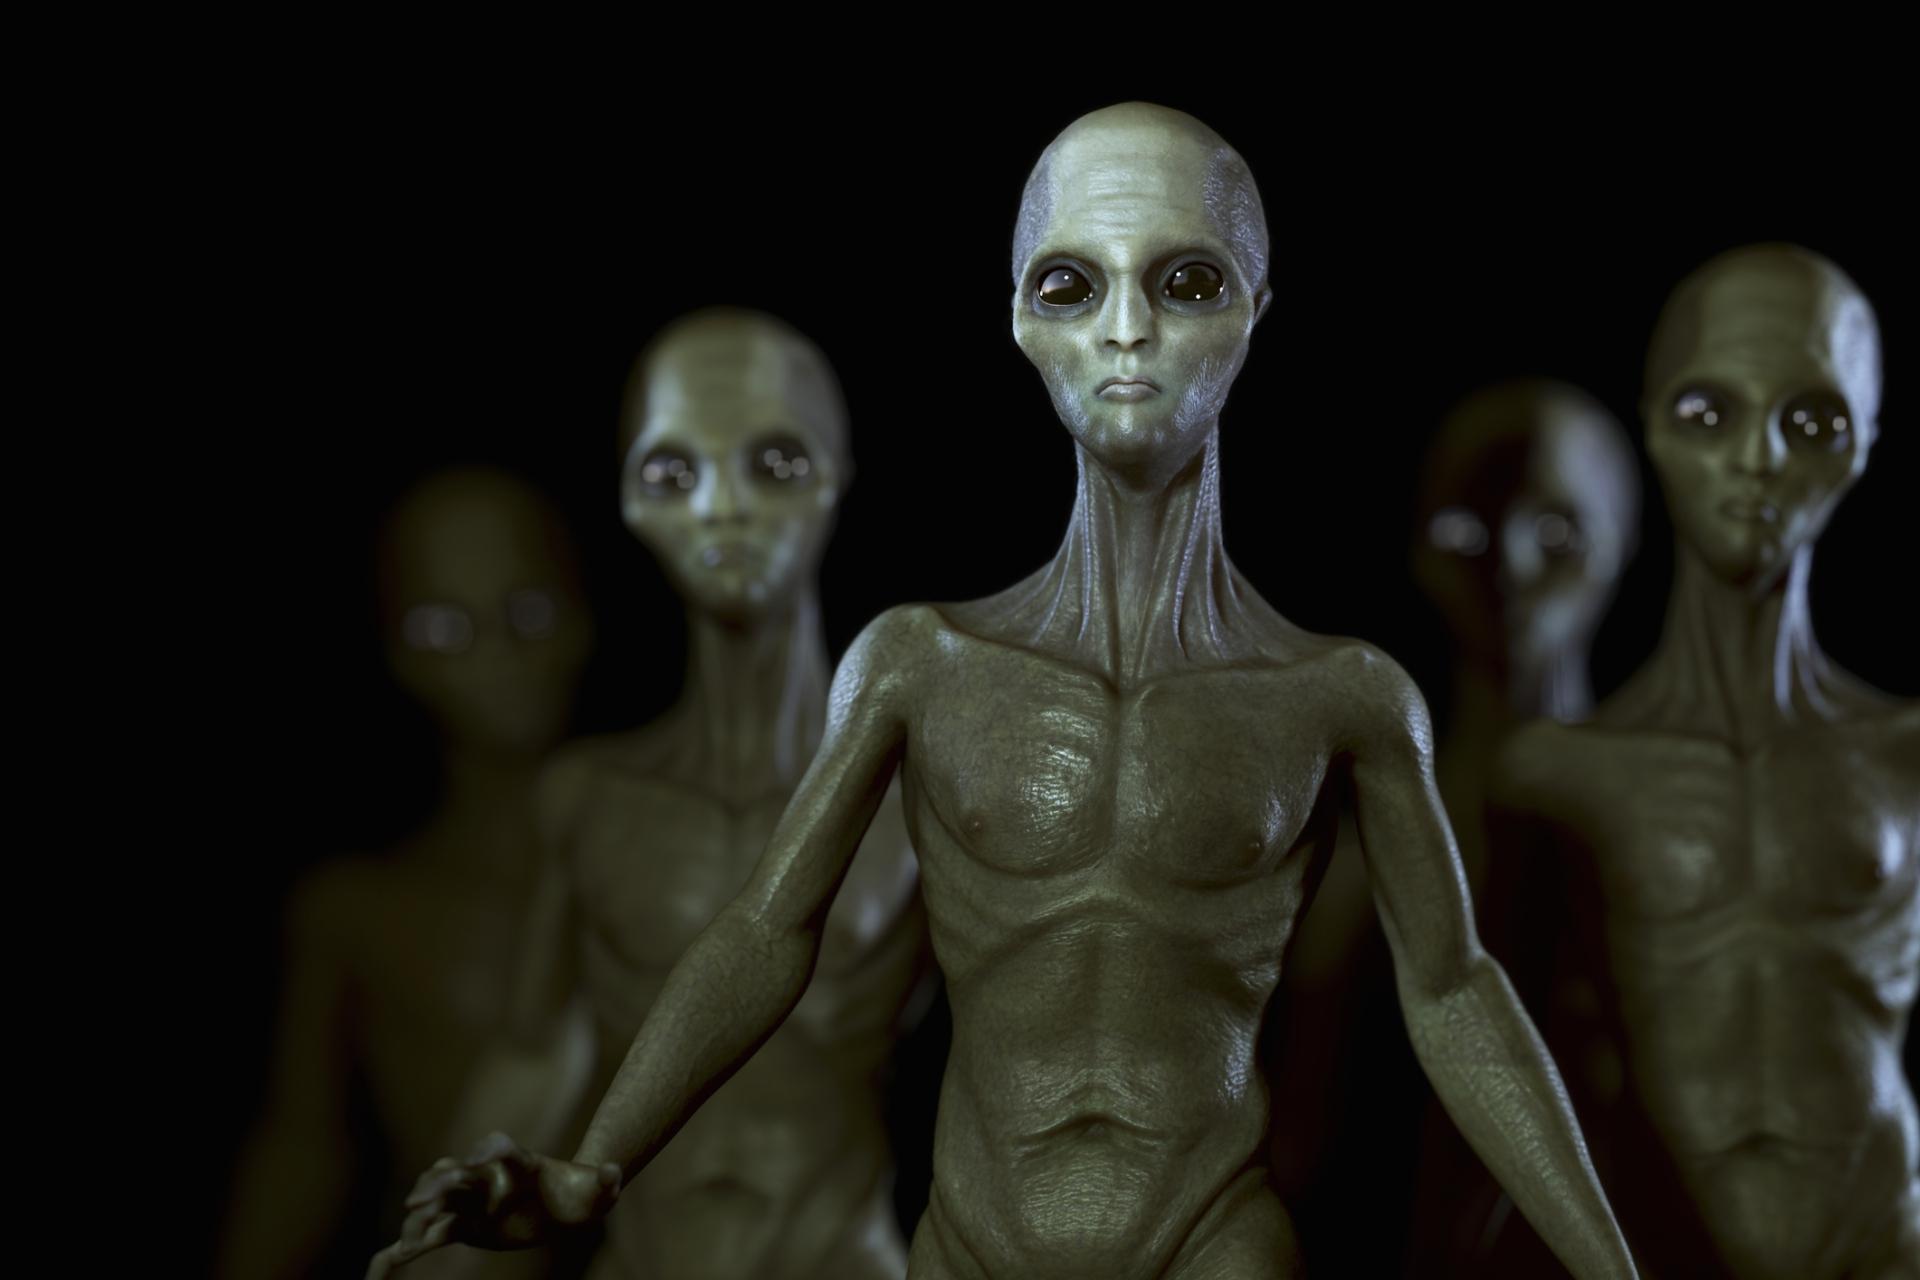 Alieni: una teoria prevede che eventuali extraterrestri saranno simili a noi